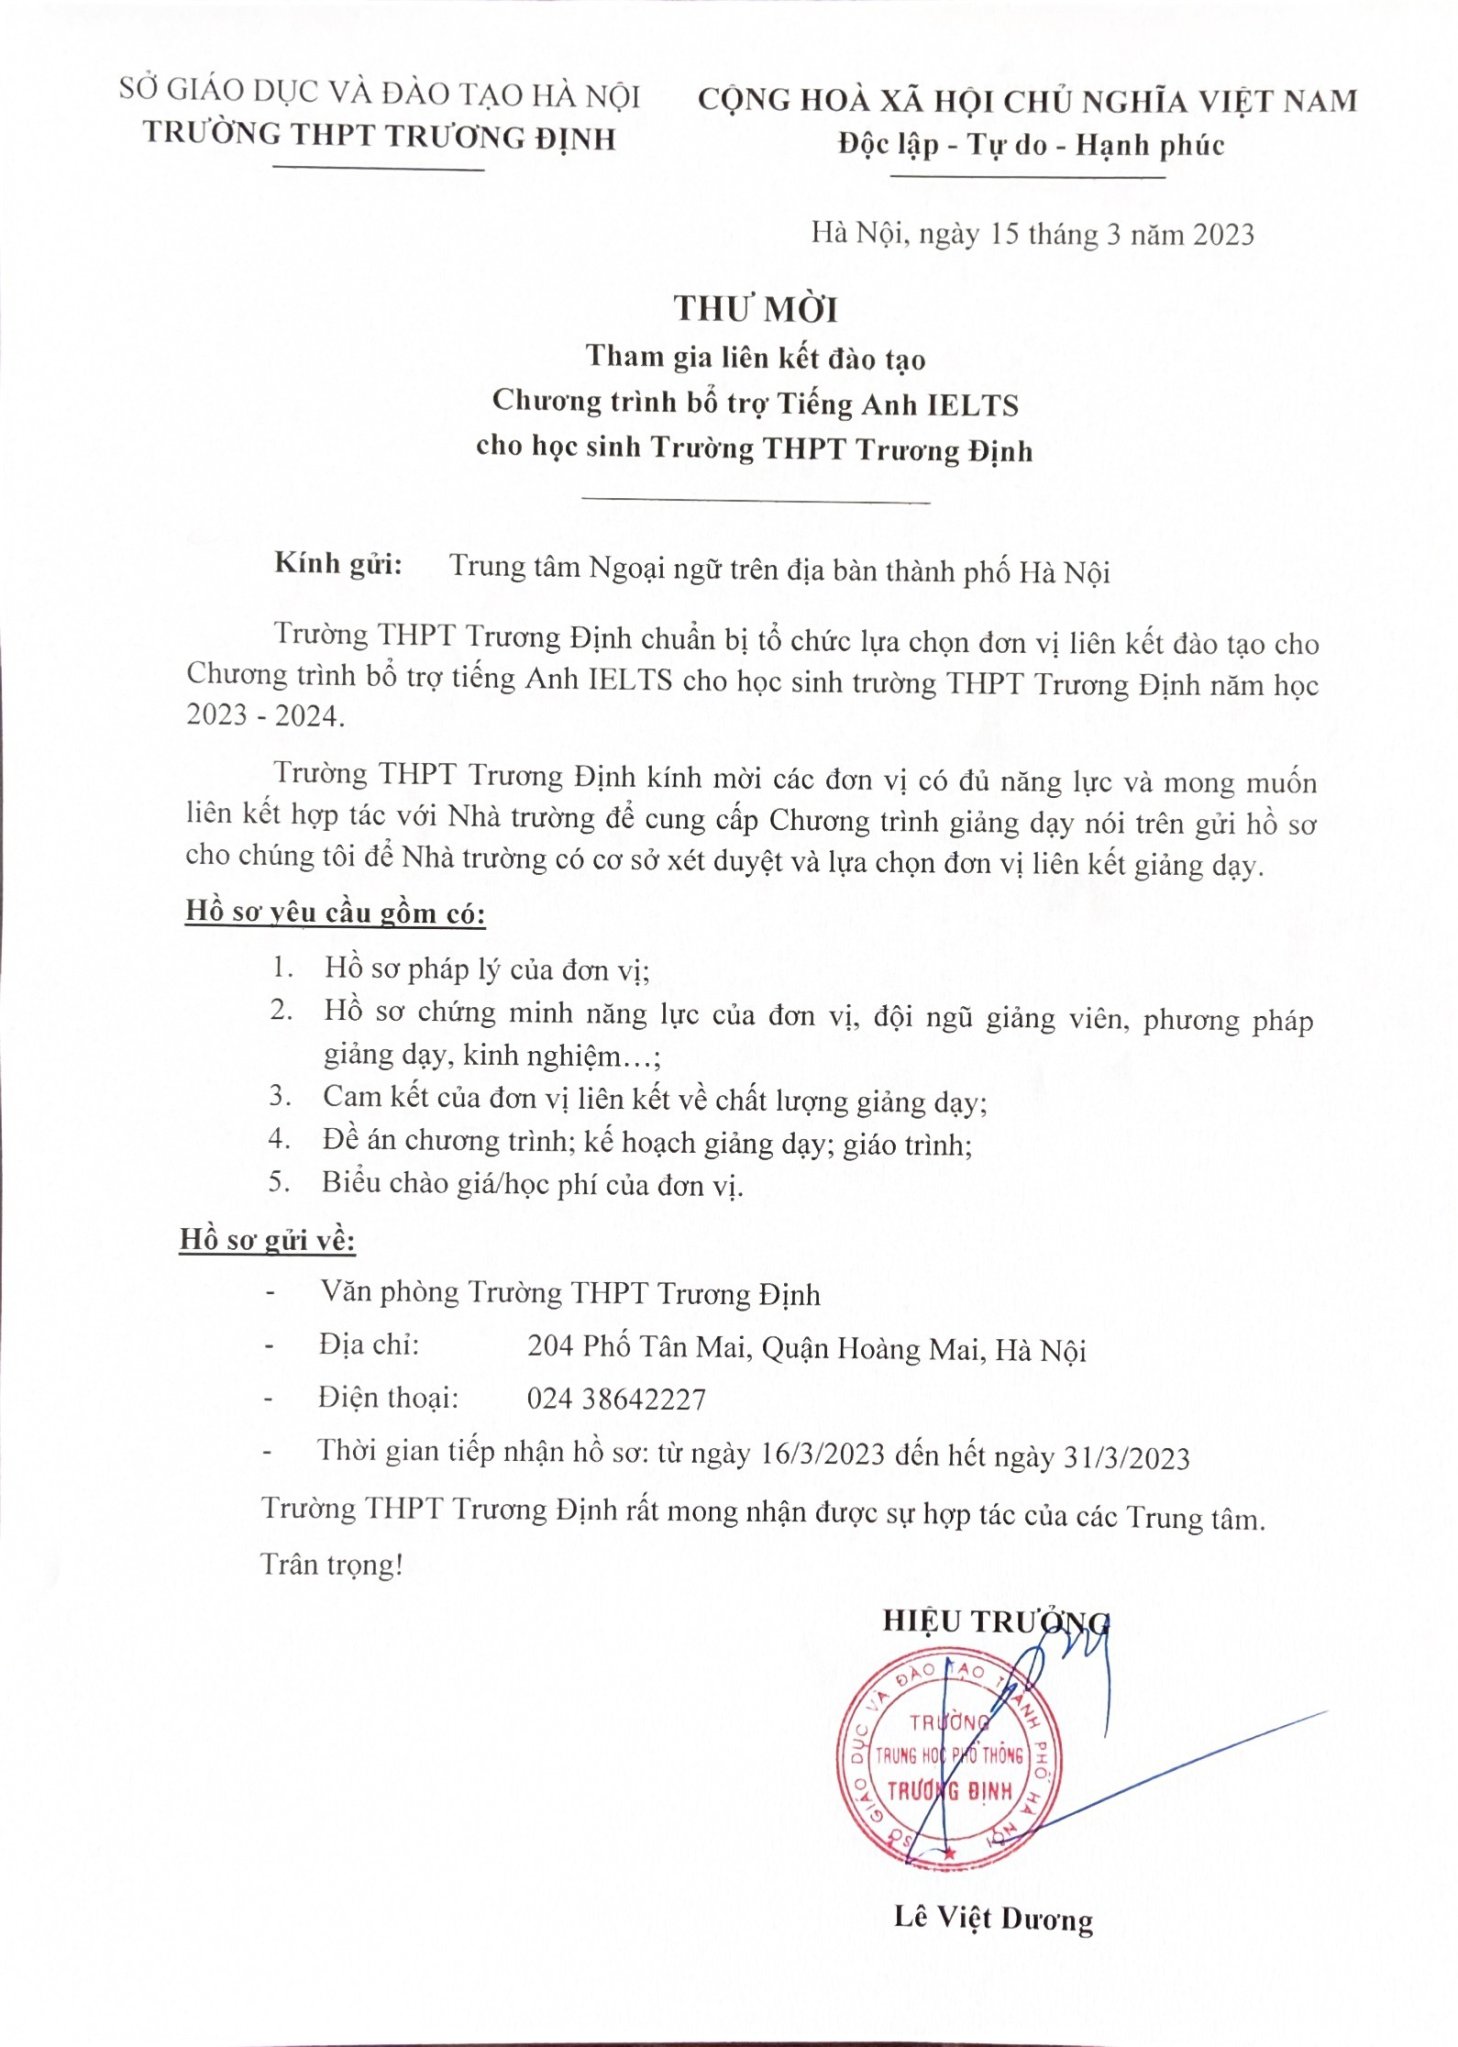 Thư mời tham gia liên kết đào tạo chương trình bổ trợ Tiếng Anh IELTS cho học sinh Trường THPT Trương Định